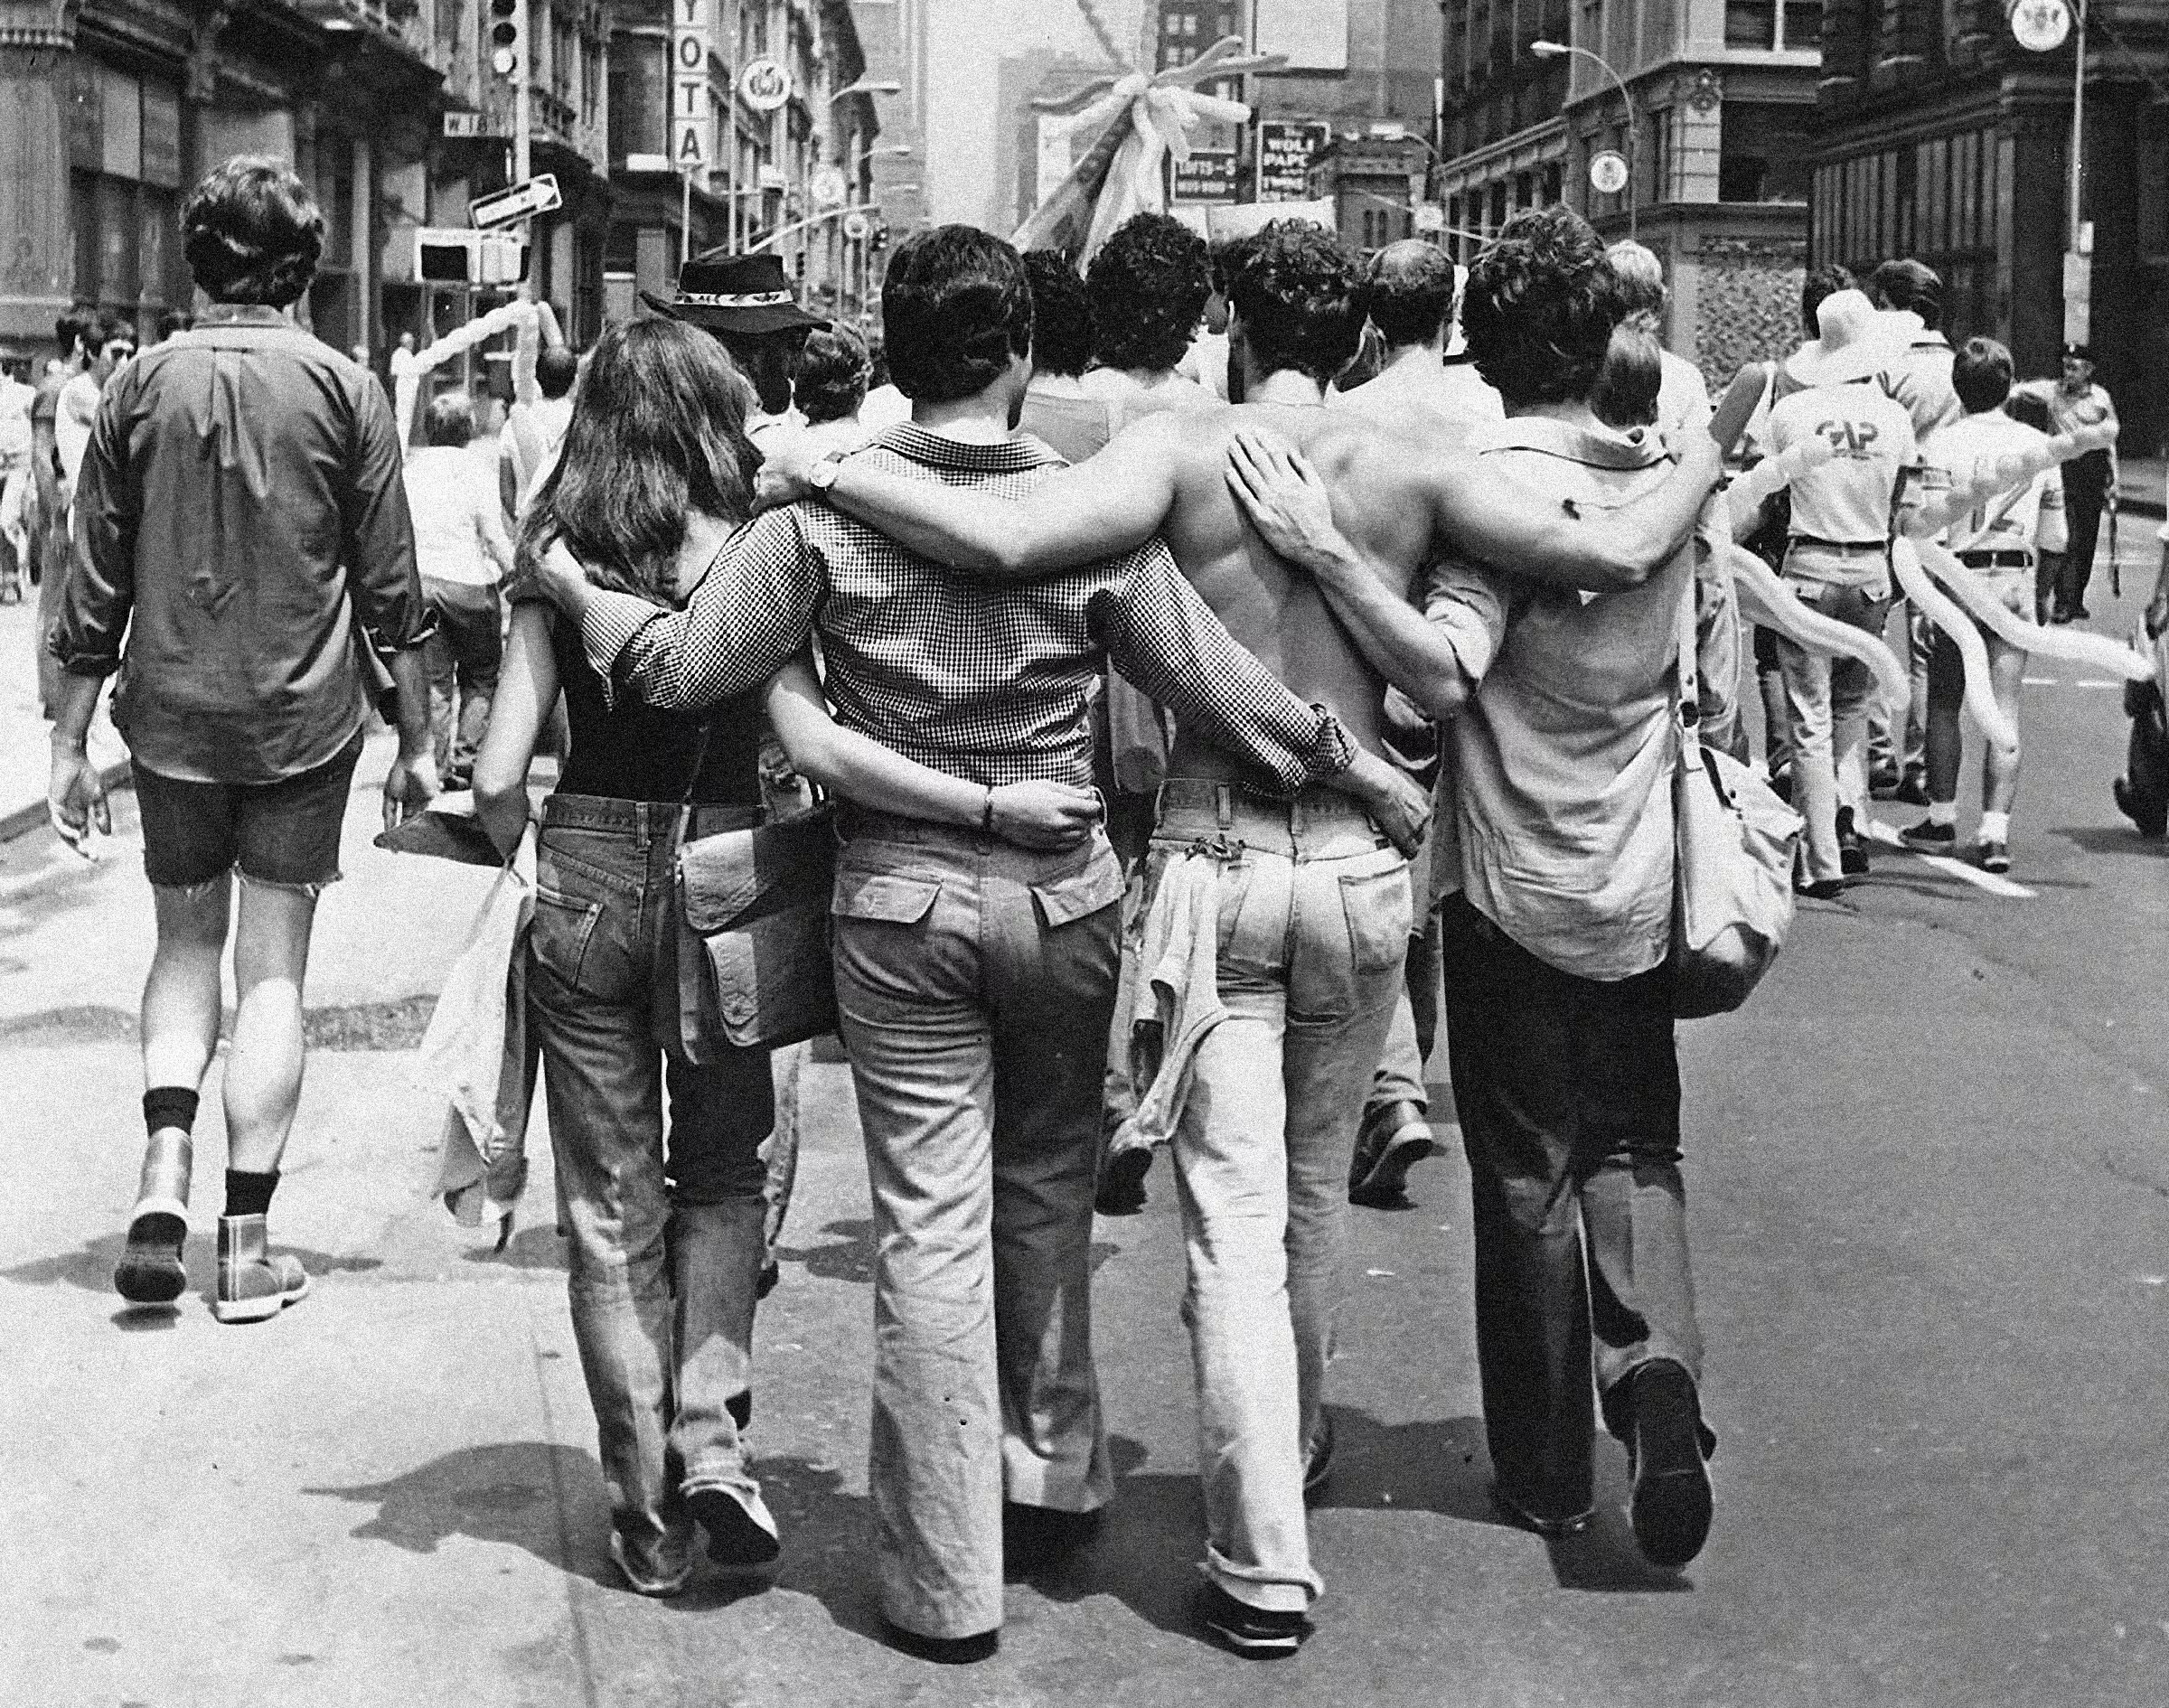 La marxa a Nova York contra la batuda que havia fet la policia, la nit del 28 de juny del 1969, a l’Stonewall Inn, un bar gai de la ciutat, va ser un punt d’inflexió.